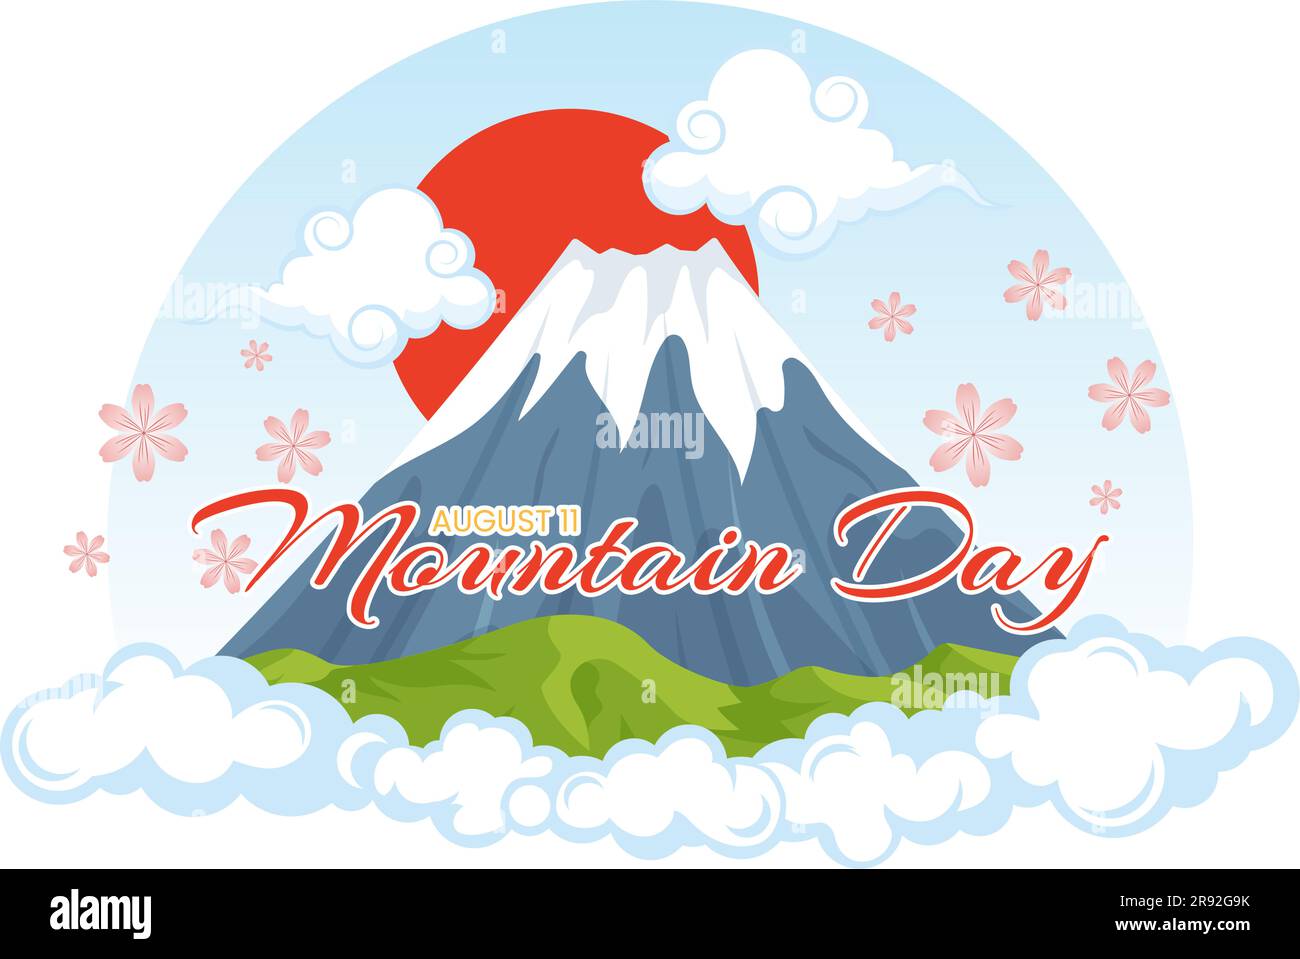 Día de la montaña en Japón ilustración vectorial el 11 de agosto con el Monte Fuji y el fondo de la flor de Sakura en plantillas planas dibujadas a mano de dibujos animados Ilustración del Vector